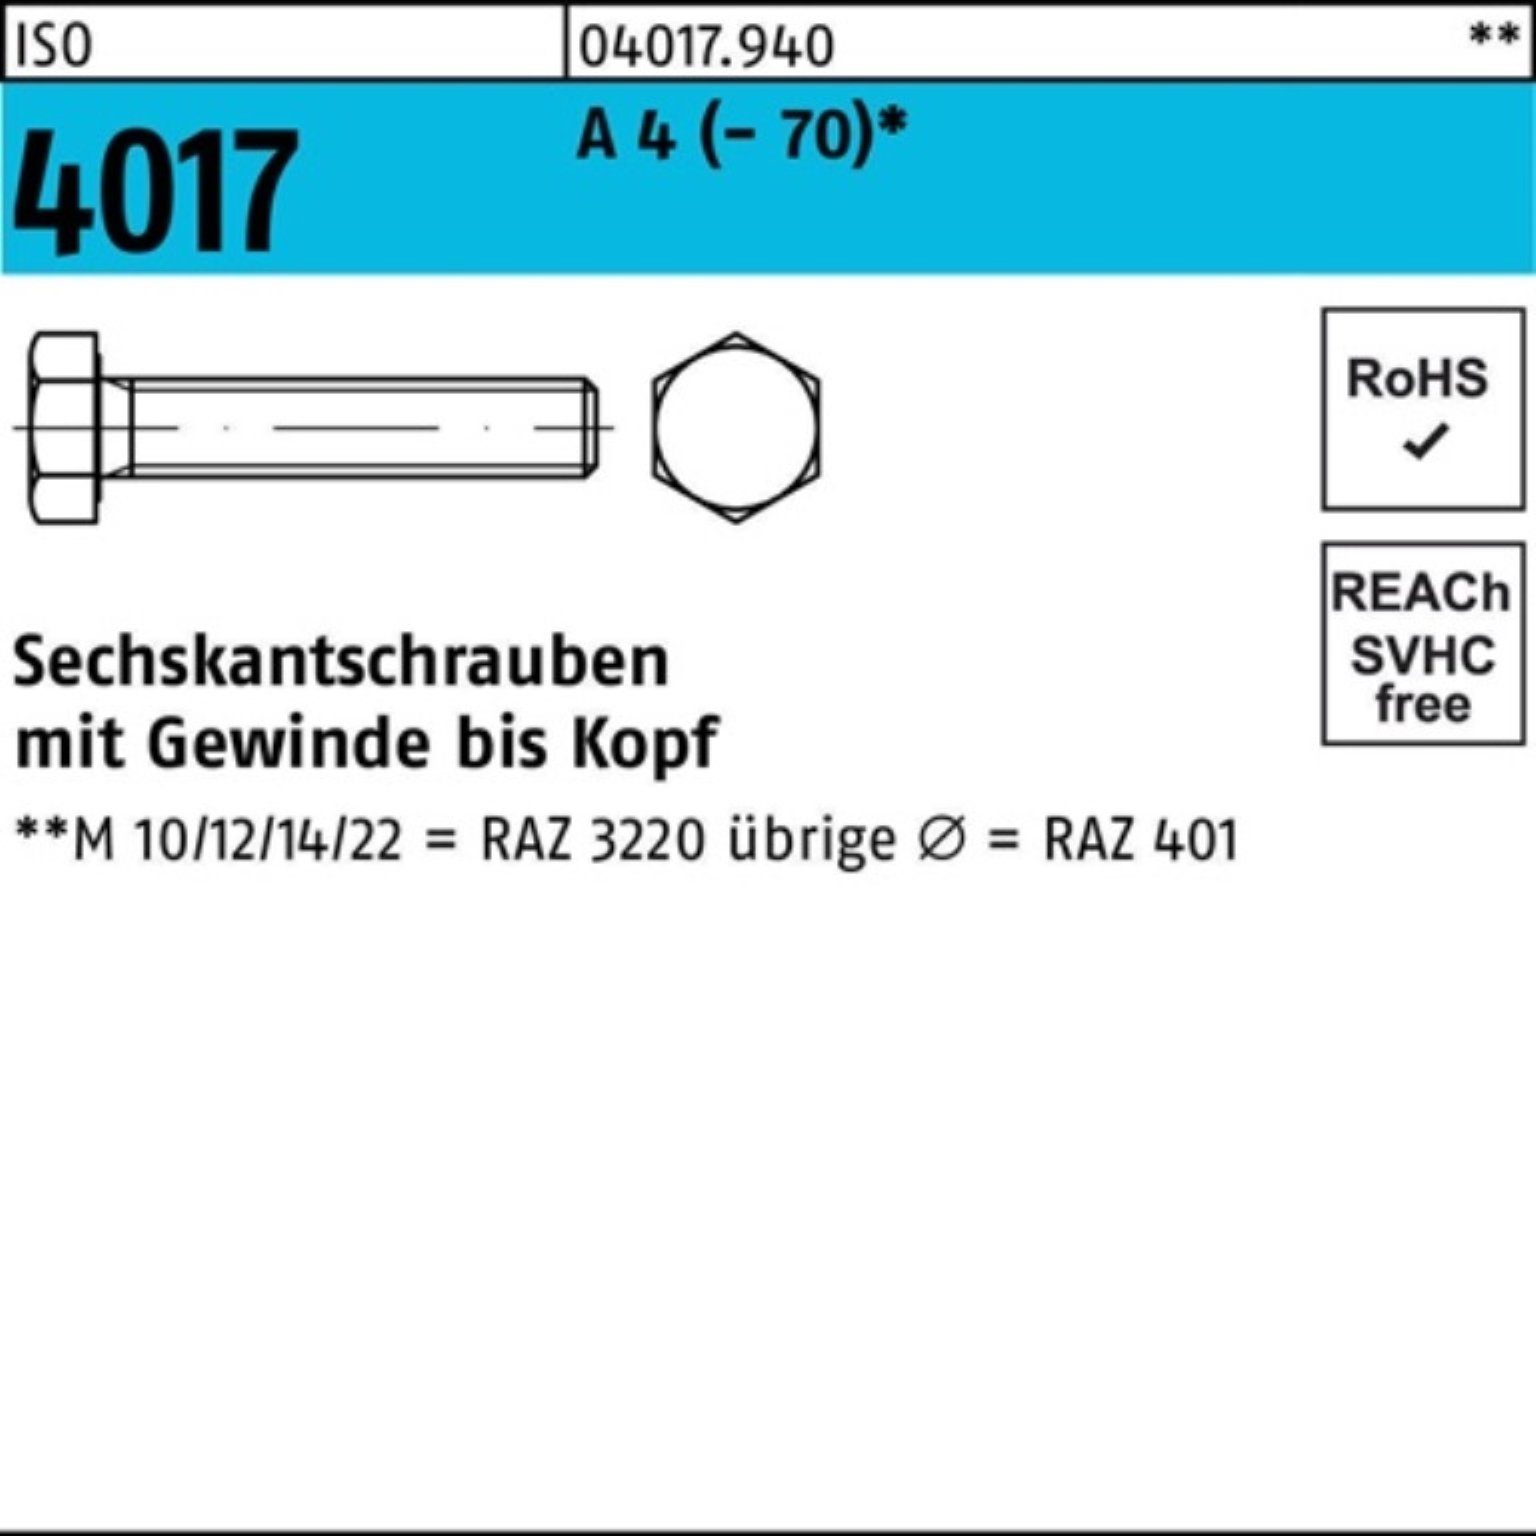 Bufab Sechskantschraube 100er Pack Sechskantschraube ISO 4017 VG M6x 80 A 4 (70) 50 Stück I